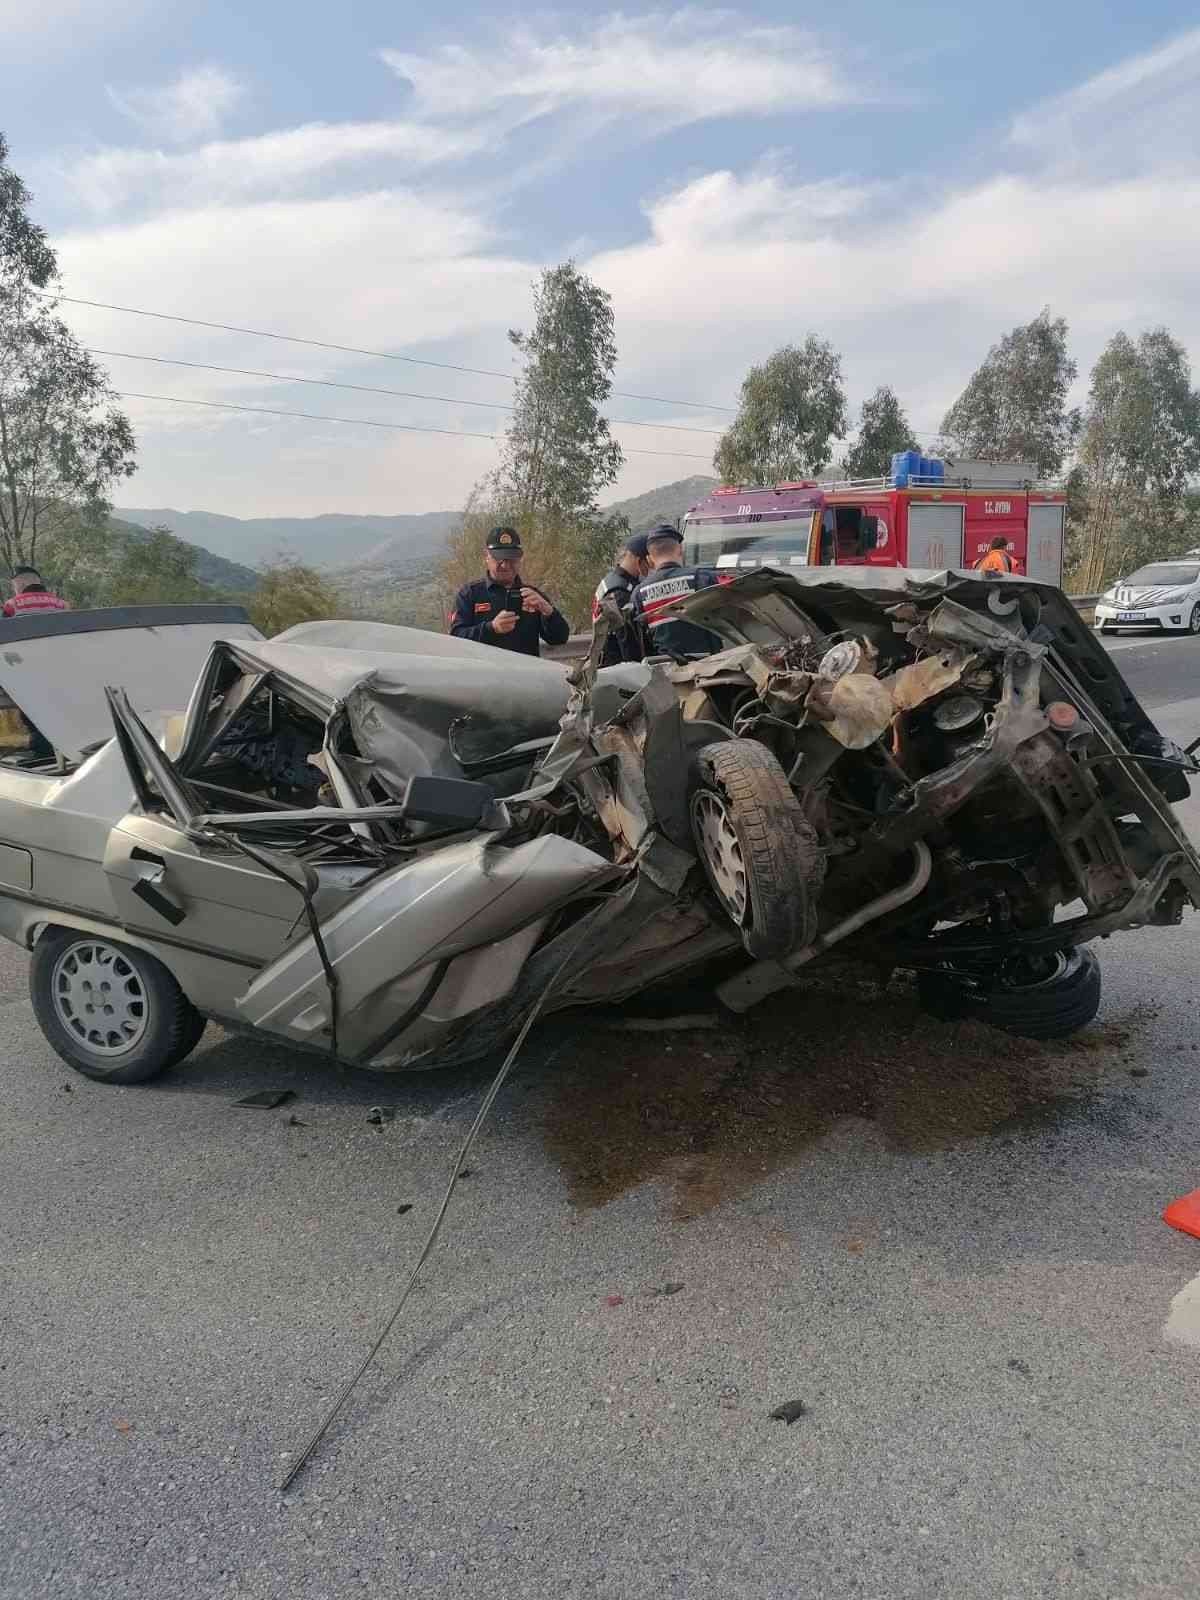 Renault otomobil kağıt gibi ezildi: 1 yaralı #aydin